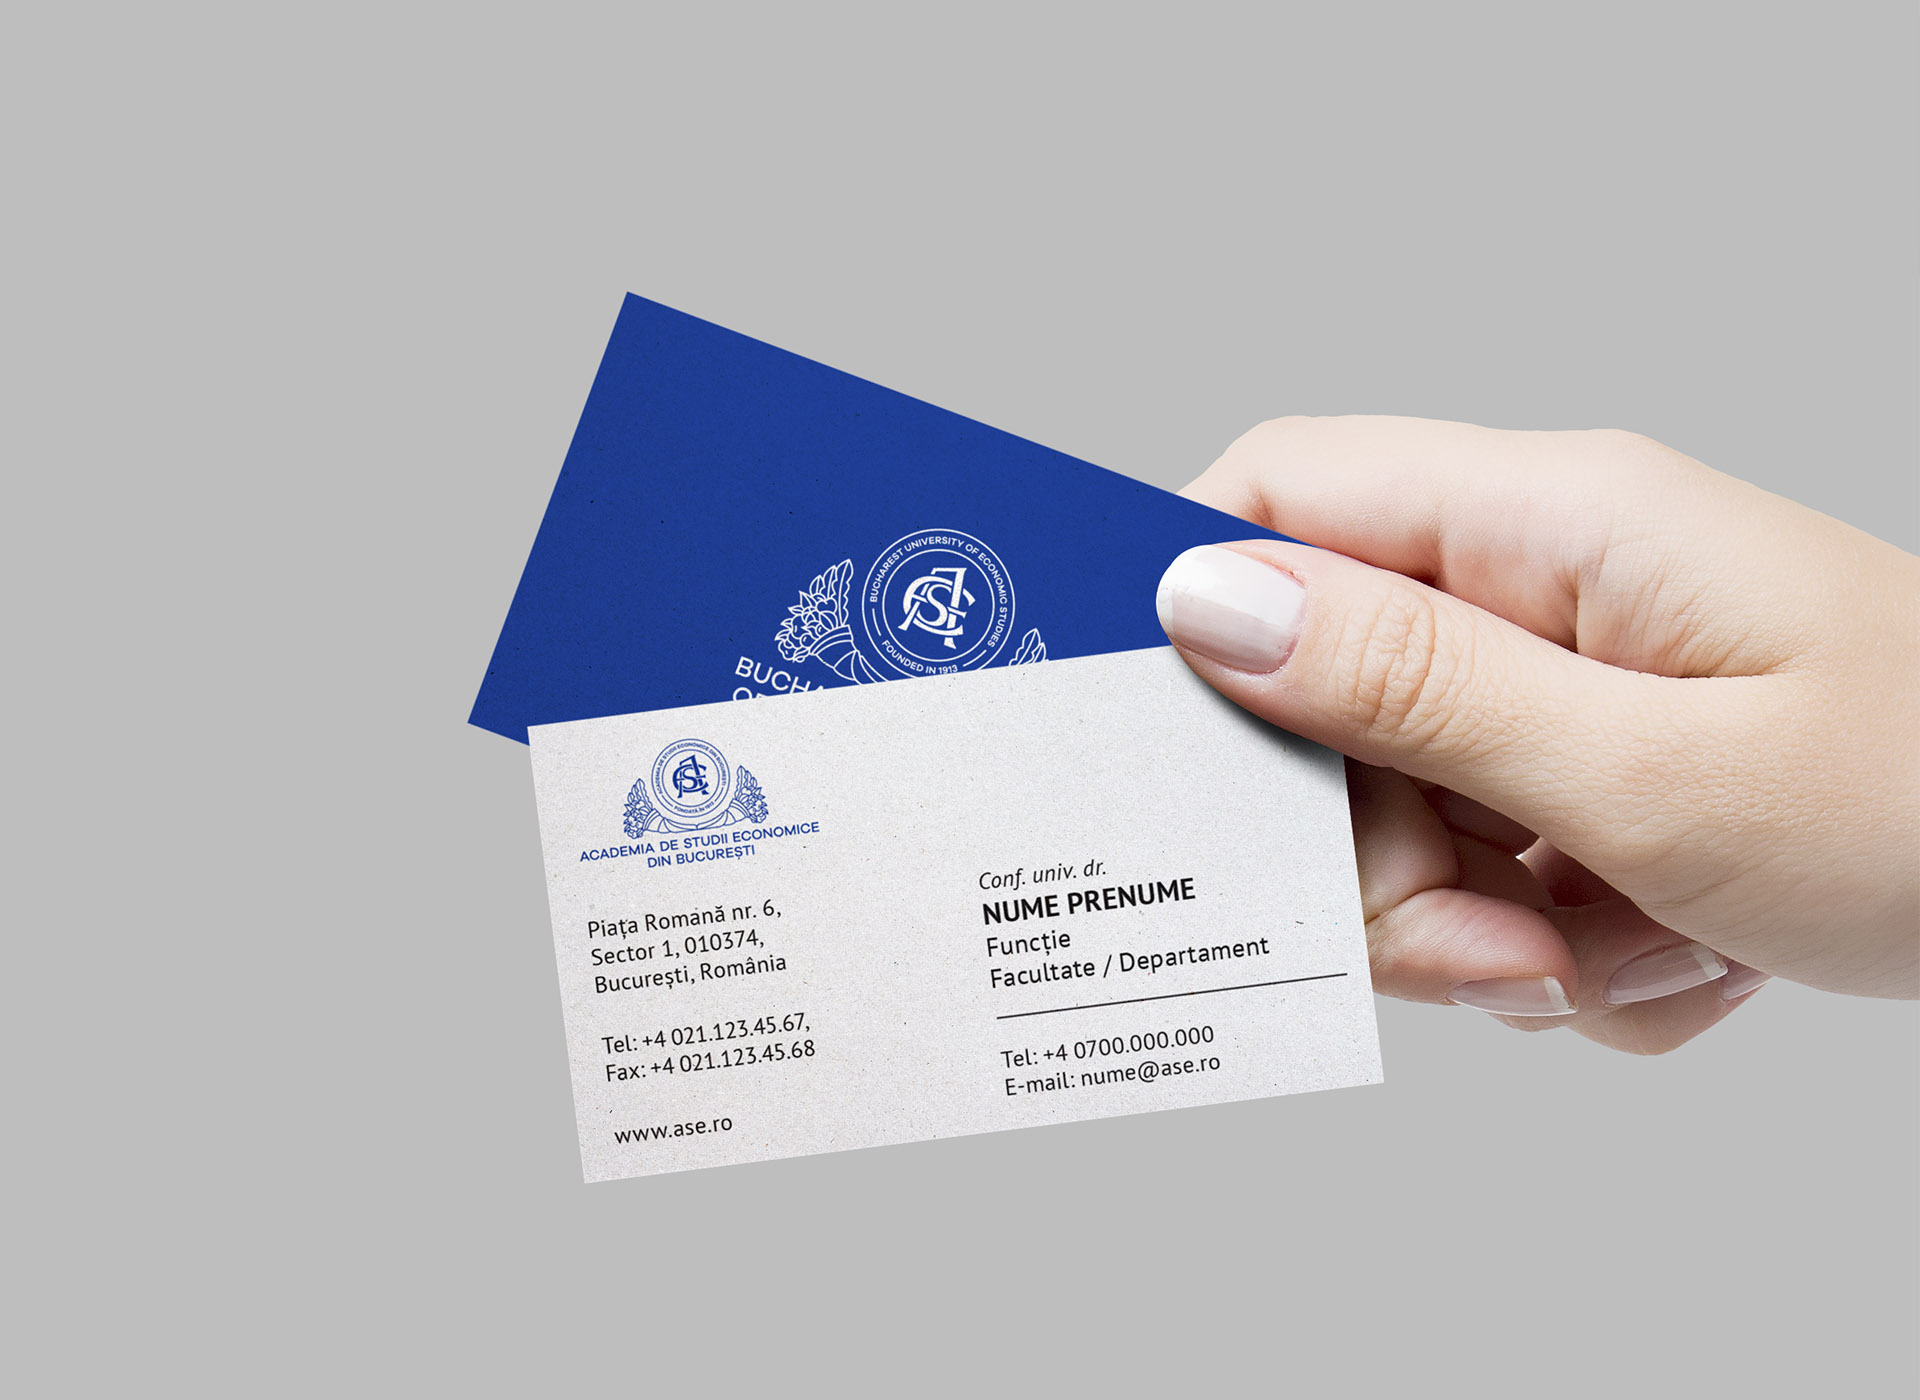 Academia de Studii Economie din Bucuresti portfolio inoveo business card